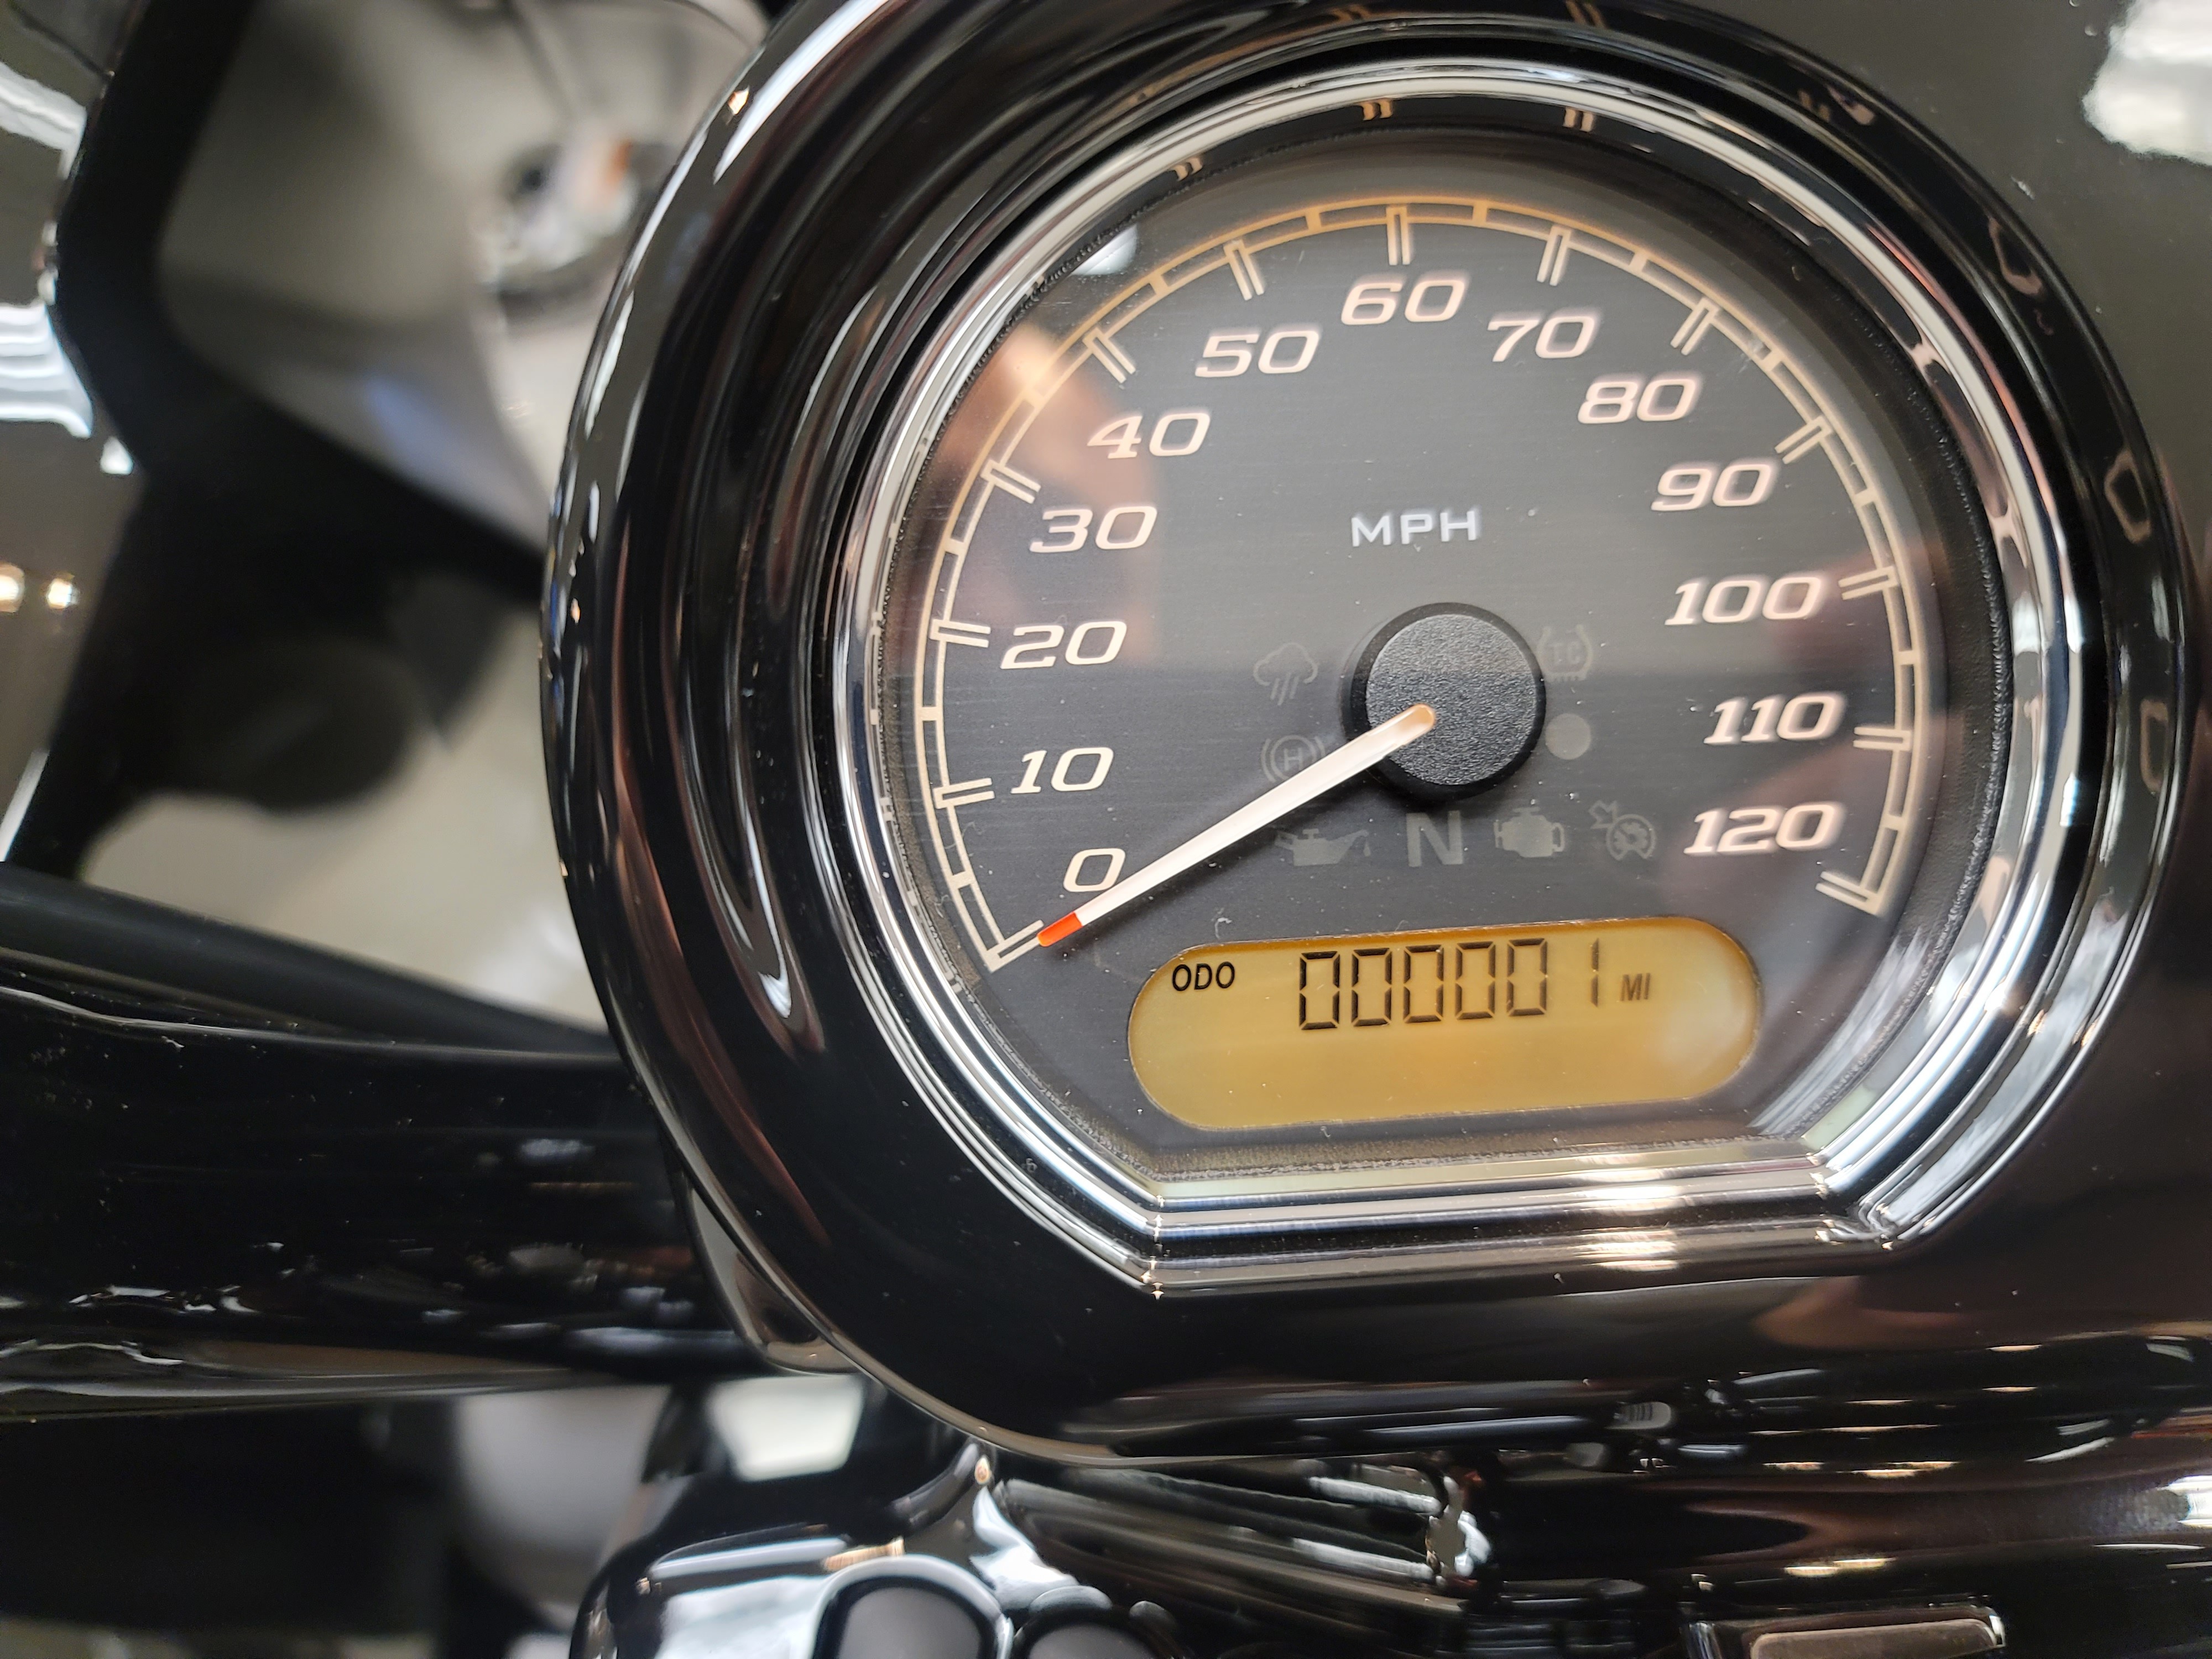 2023 Harley-Davidson Road Glide ST at Rooster's Harley Davidson